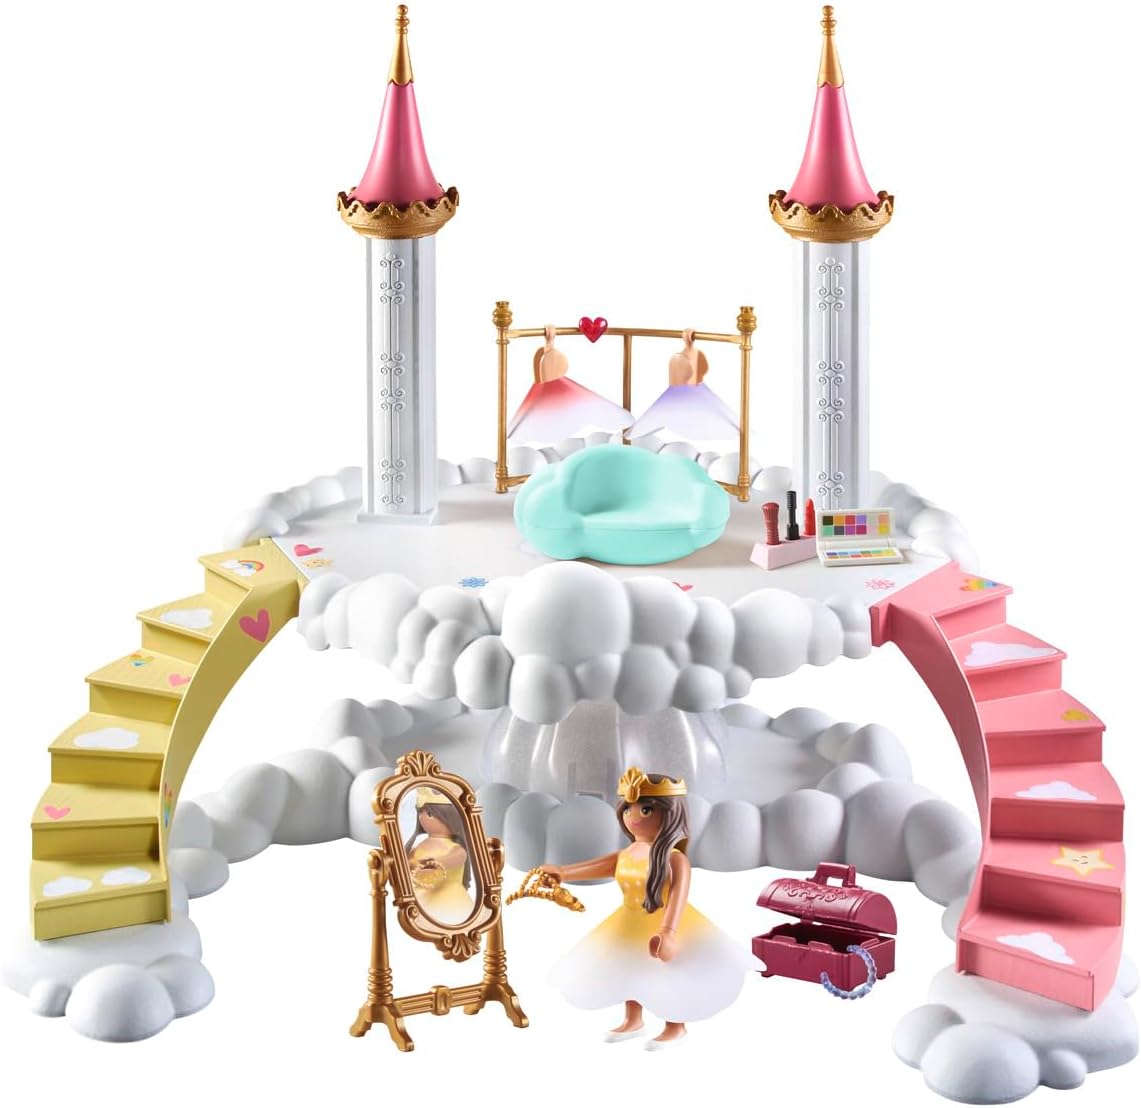 Playmobil 71408 Castelo Arco-Íris: Nuvem de camarim, mundo mágico de conto de fadas, dramatização divertida e imaginativa, conjuntos de jogos adequados para crianças de 4 anos ou mais